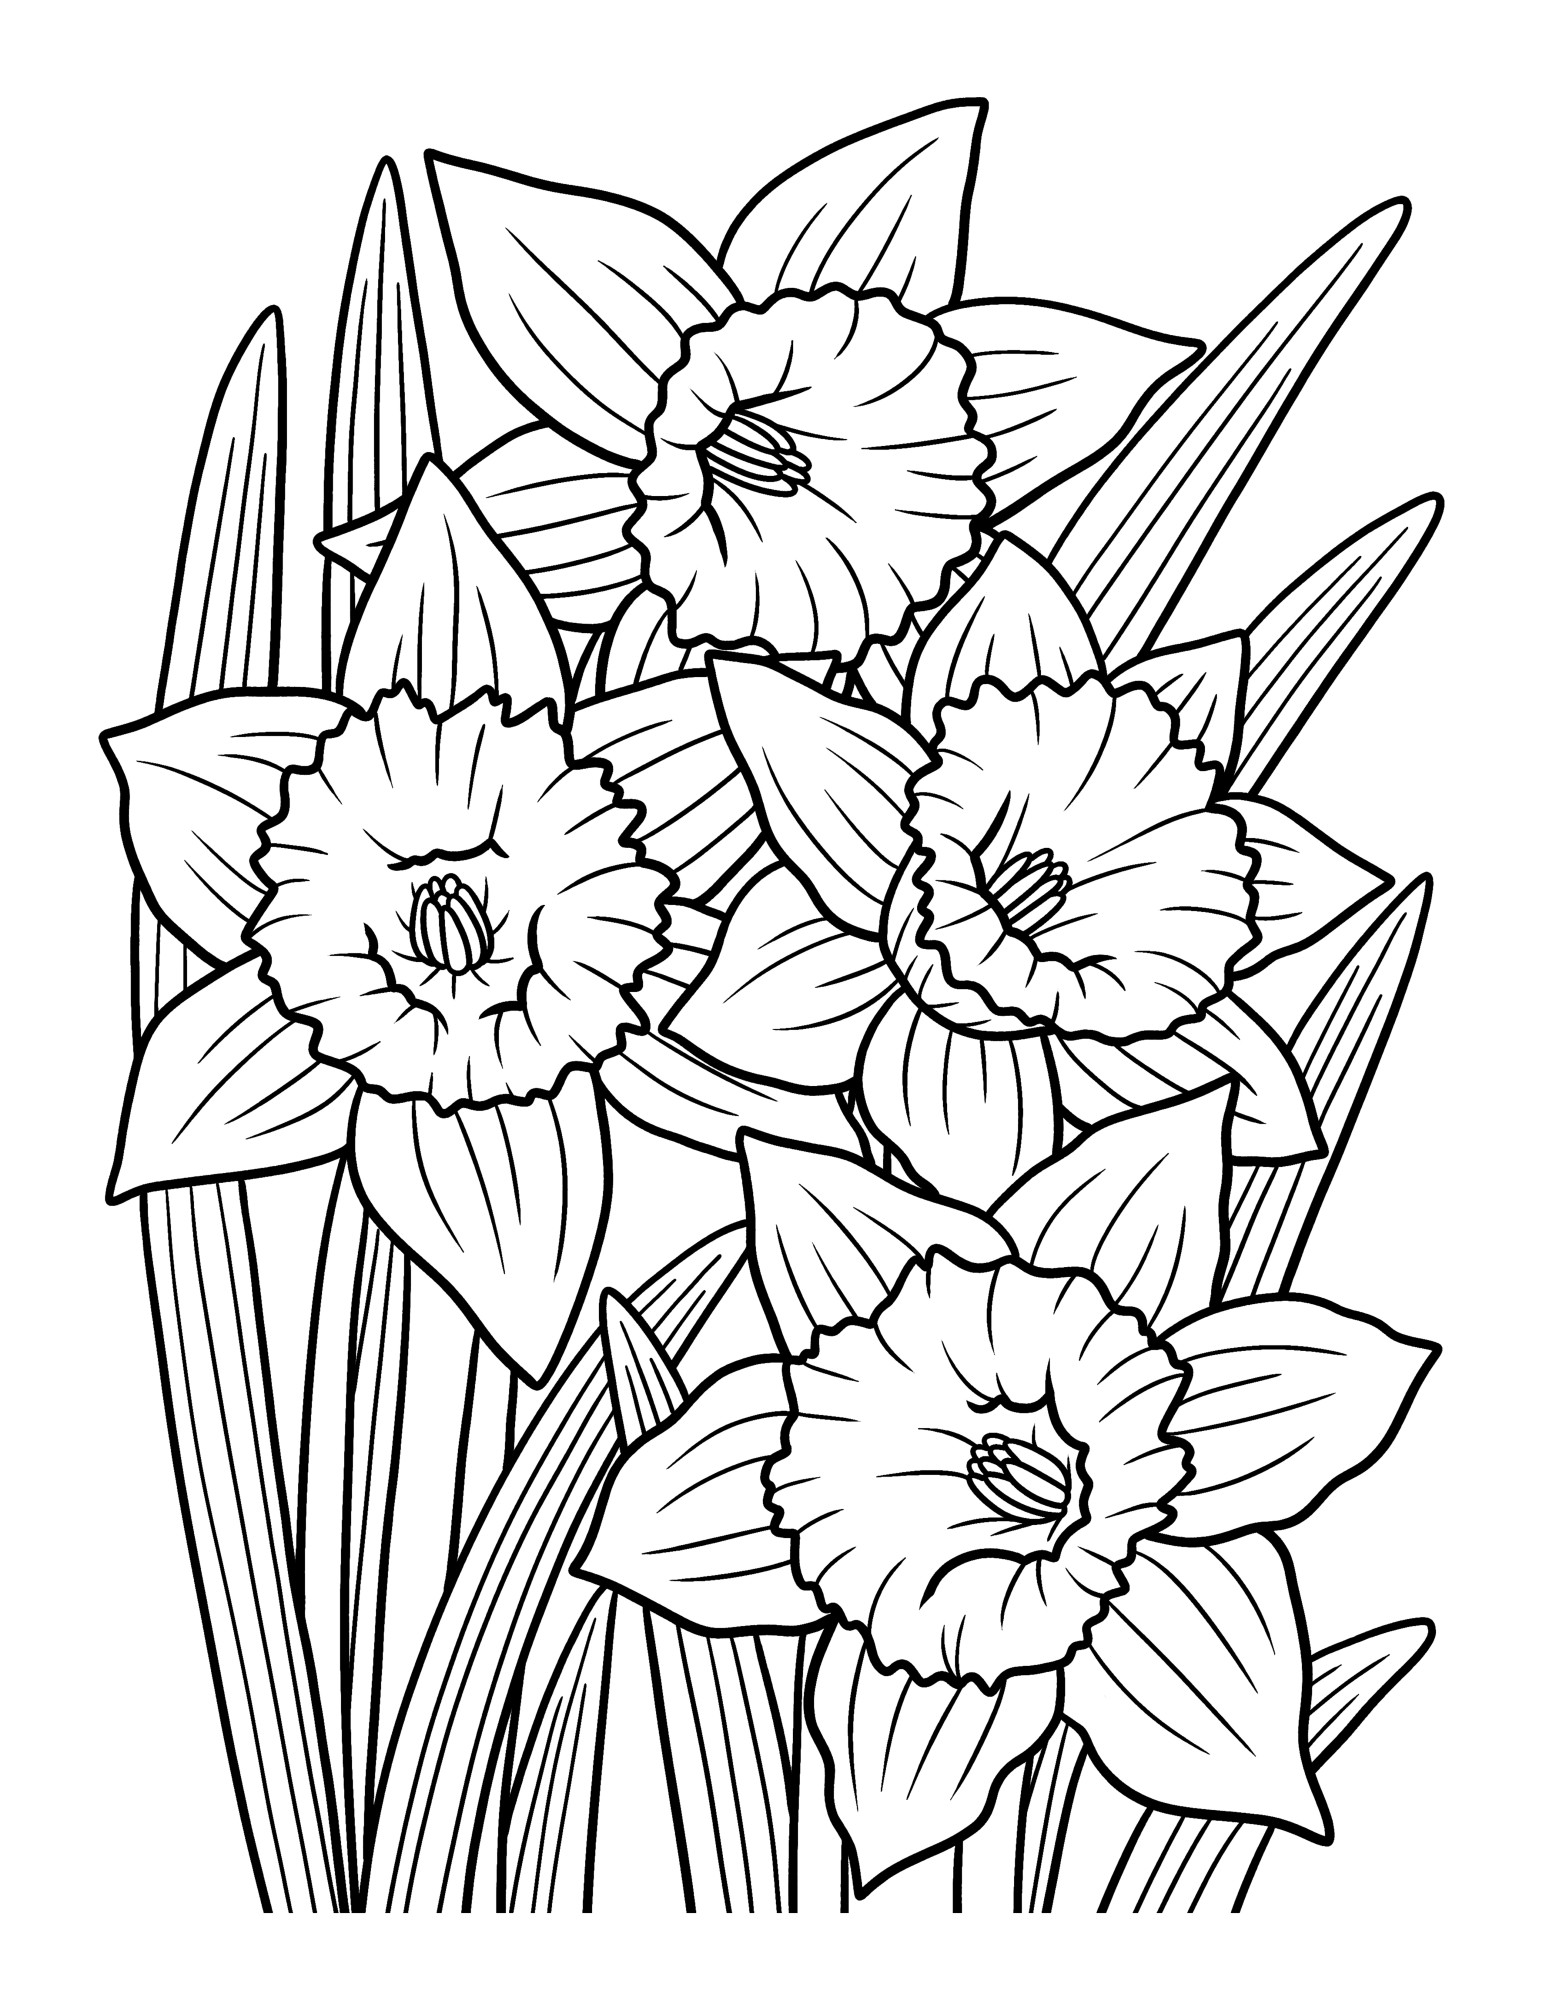 Раскраска для детей: цветок нарцисс